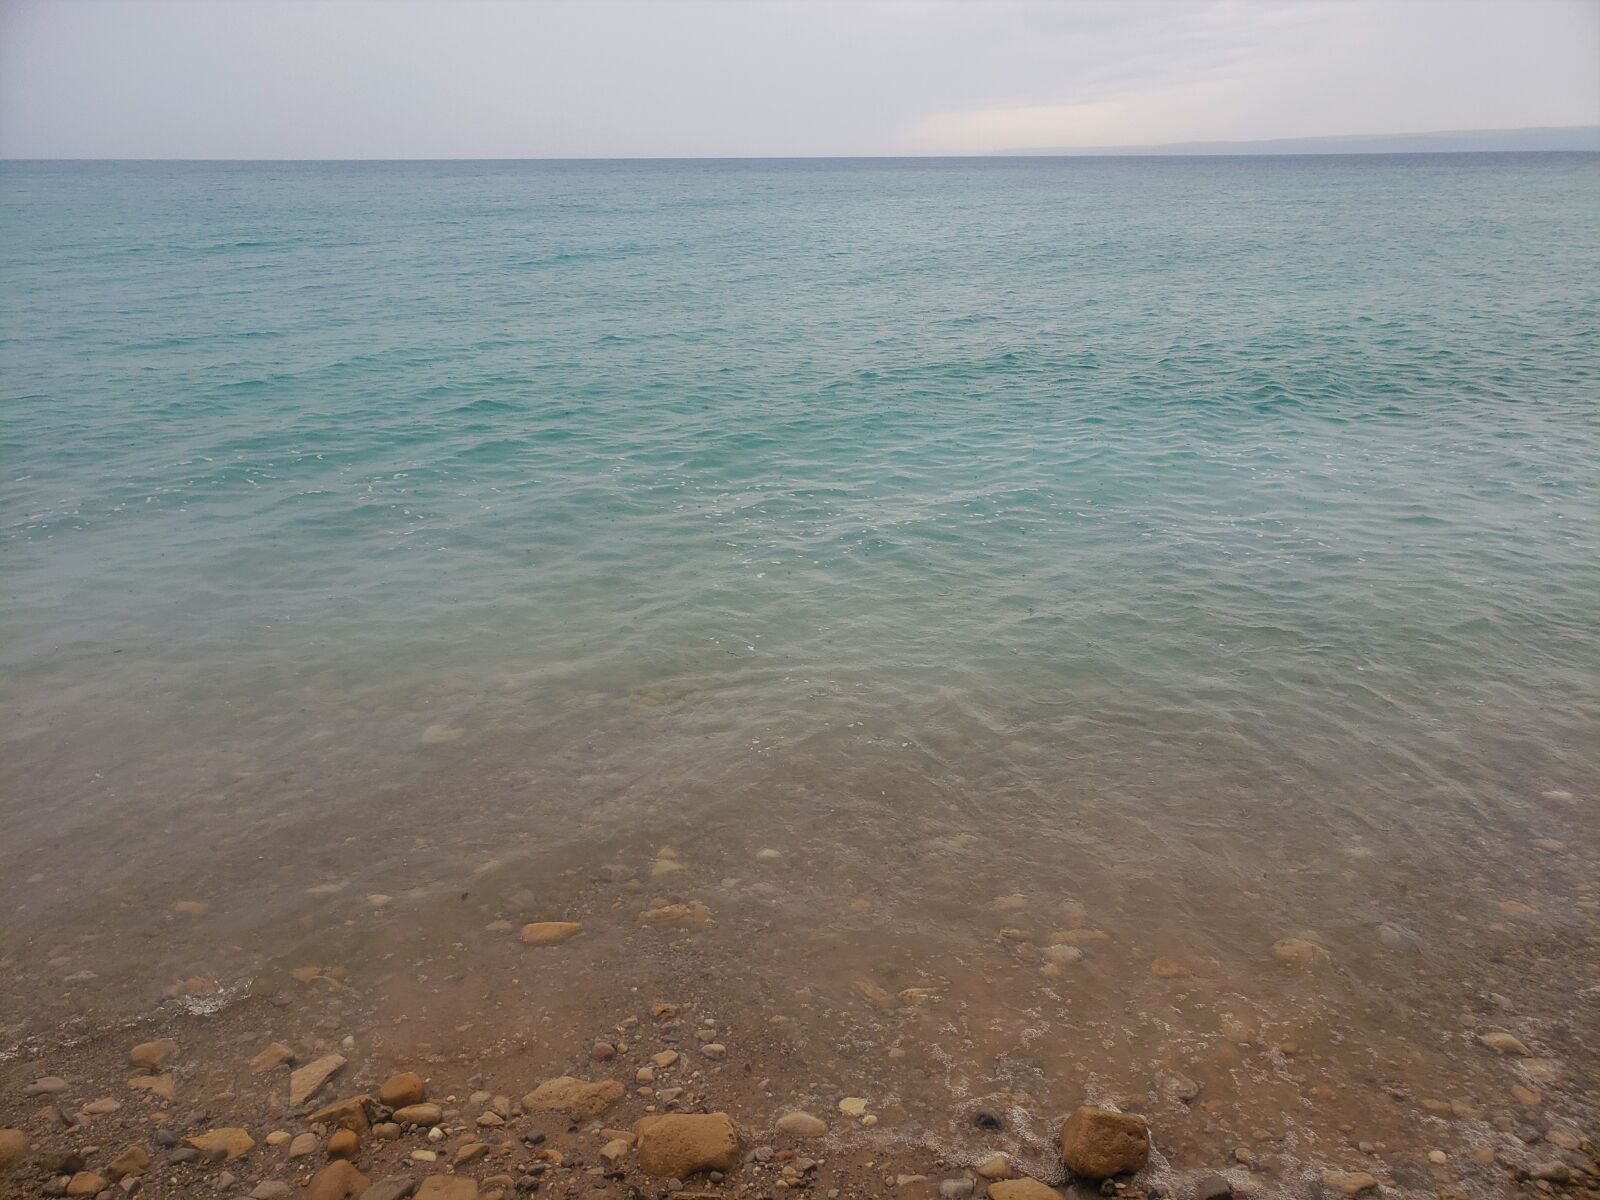 Samsung SM-G960U sample photo. Lake, michigan, beautiful photography